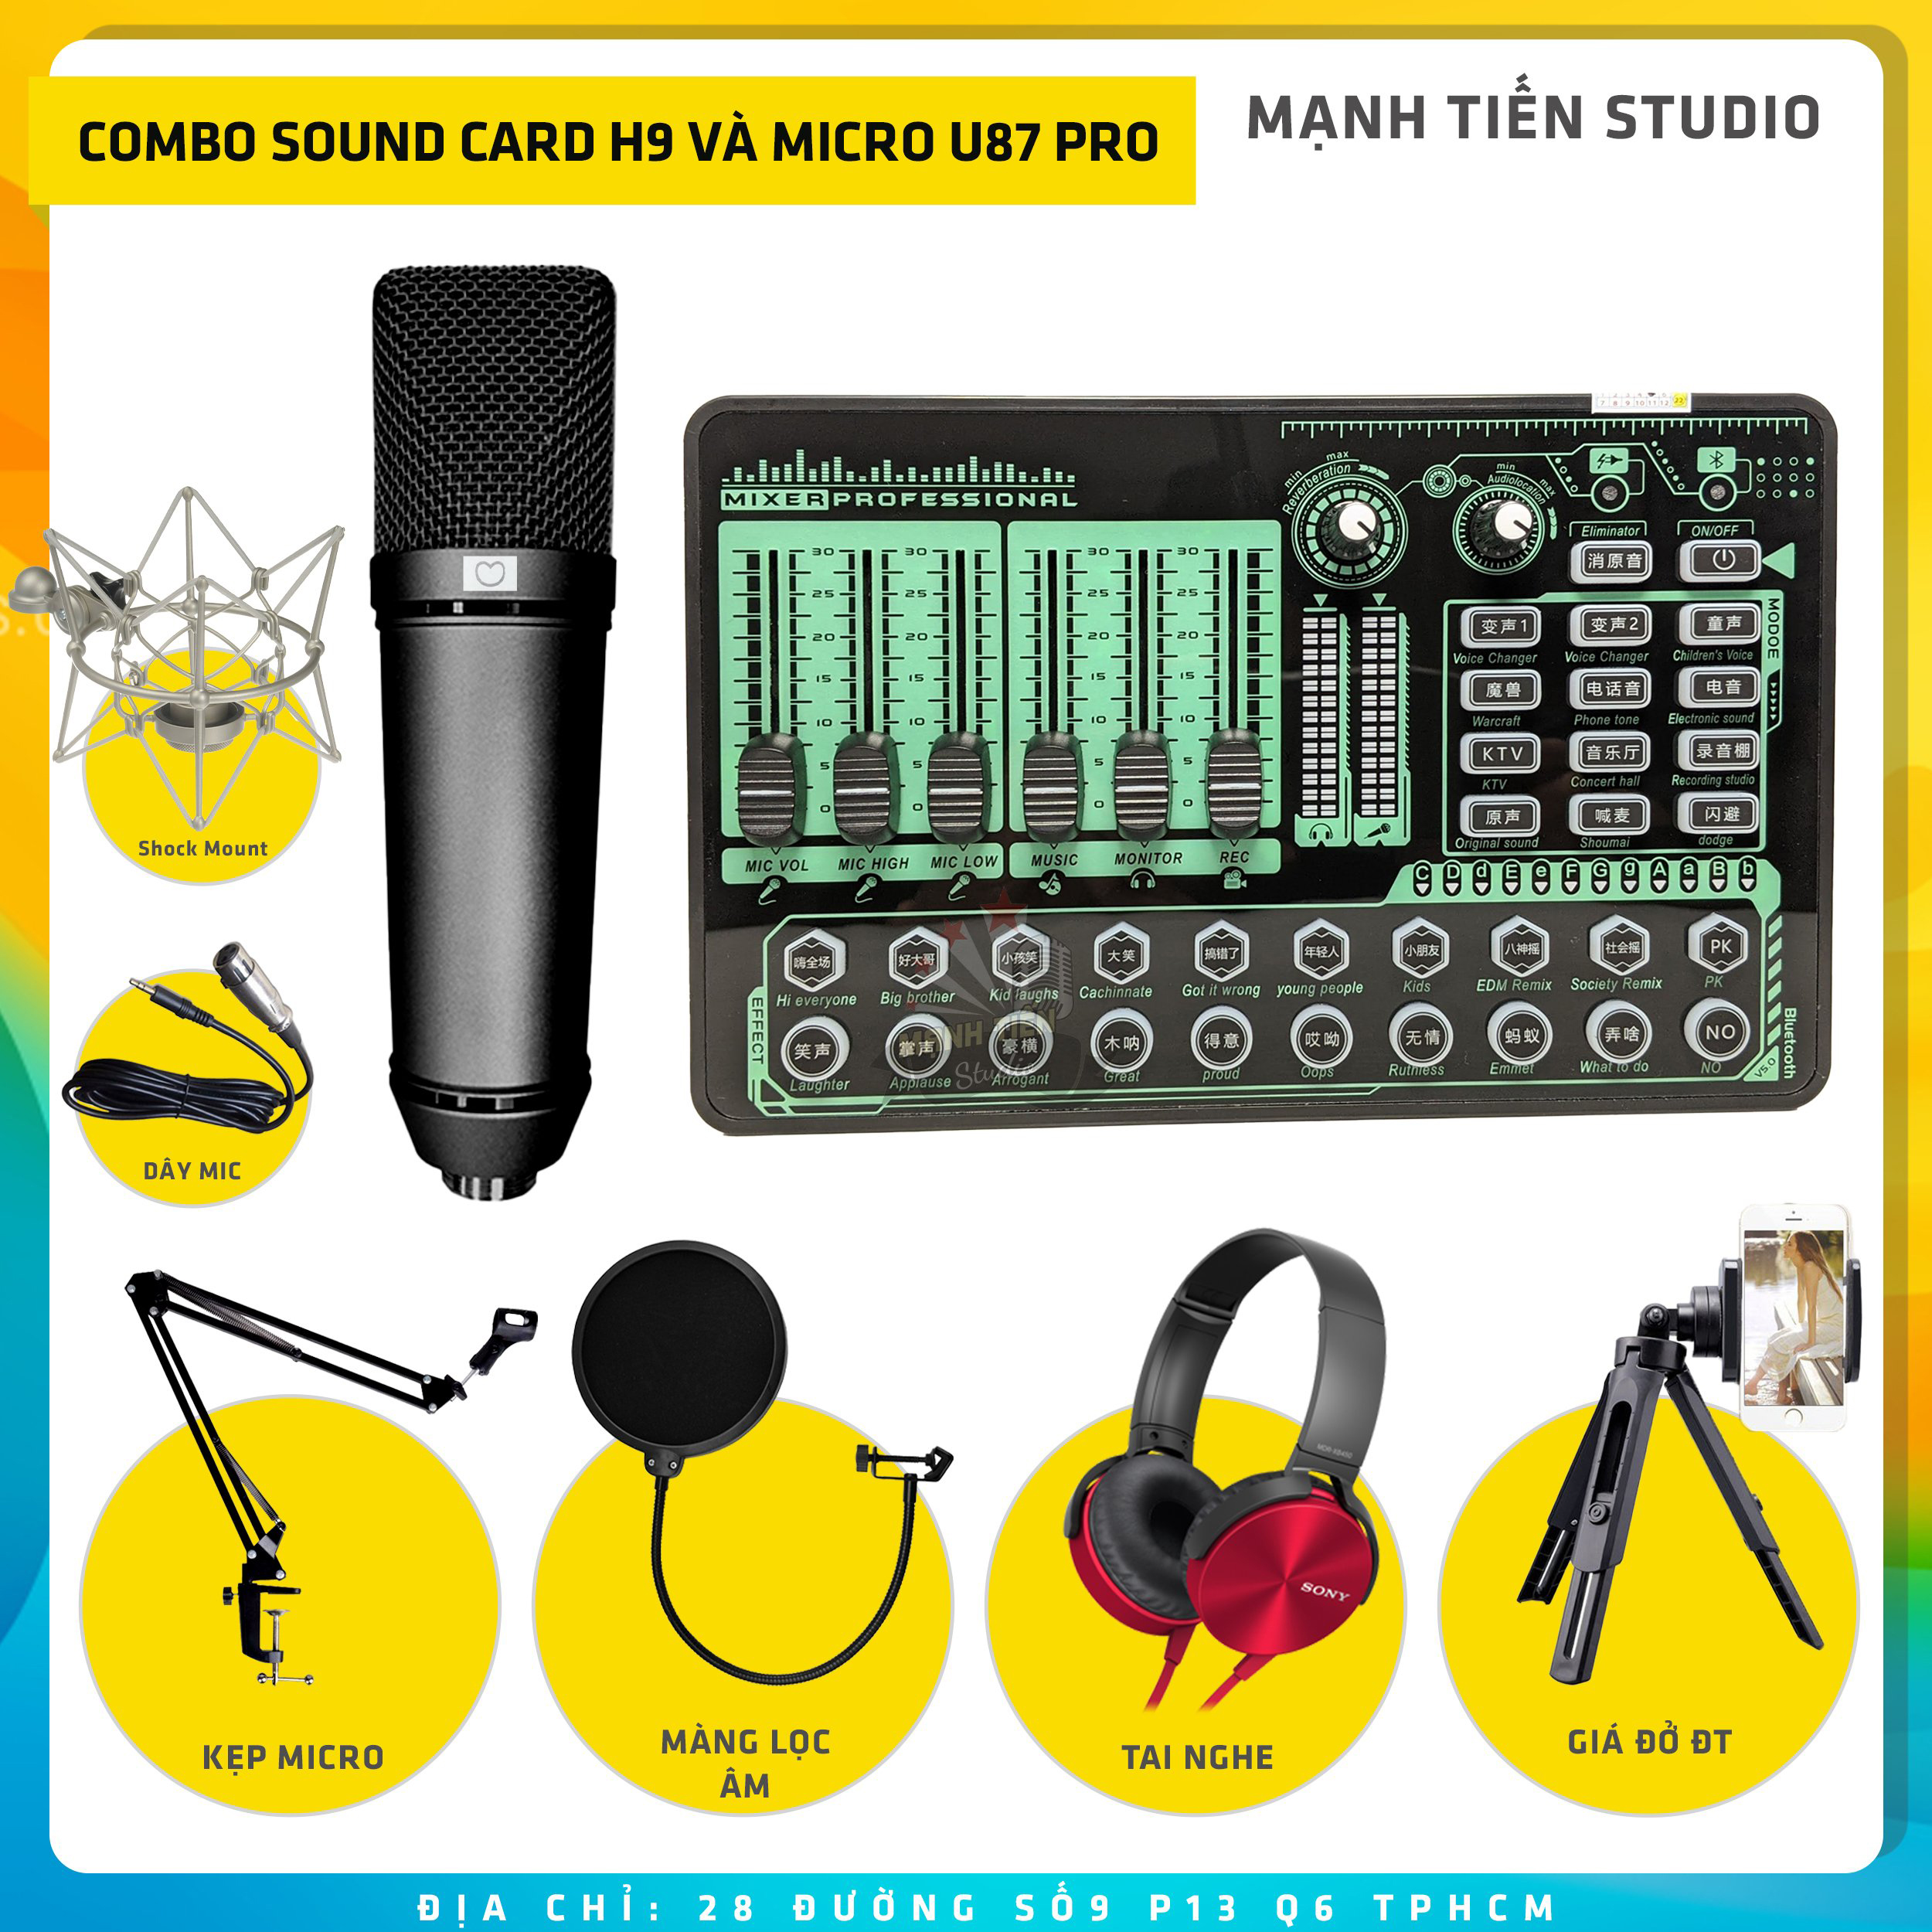 Combo thu âm, livestream Micro AQTA U87-Pro, Sound card H9 bluetooth 2021 - Kèm full phụ kiện kẹp micro, màng lọc, tai nghe, giá đỡ ĐT - Hỗ trợ thu âm, karaoke online chuyên nghiệp